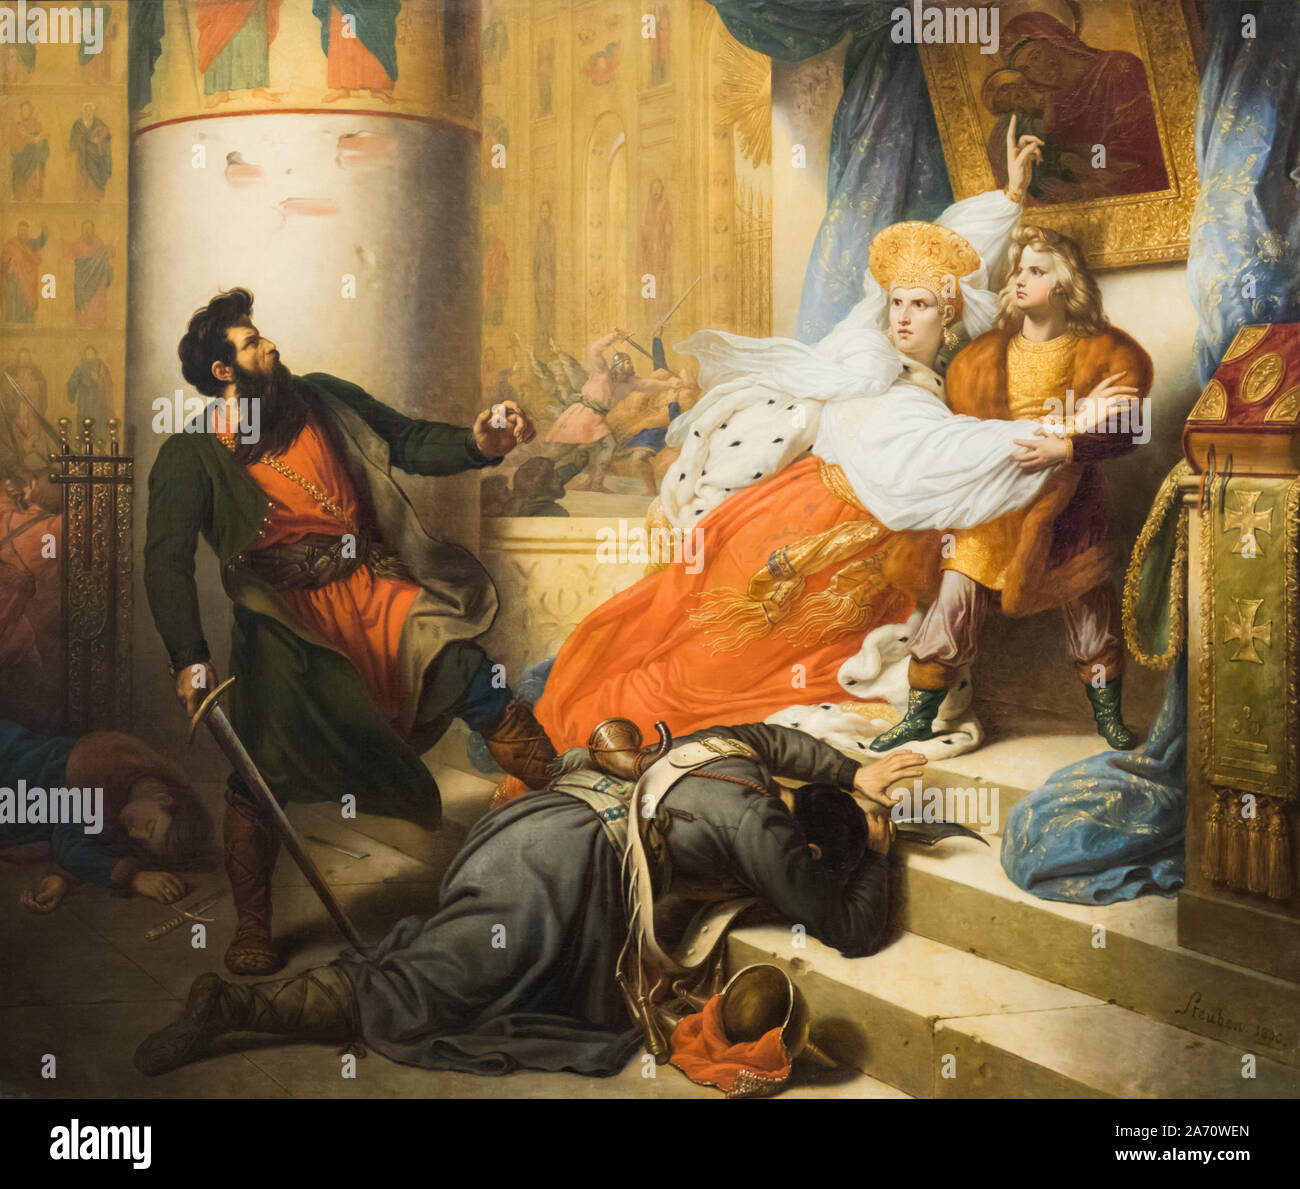 Pierre le Grand dans l'enfance, sauvé de la fureur de l'furent par sa mère. D'après une peinture par Charles de Steuben. Exposées dans le son de Malaga Banque D'Images